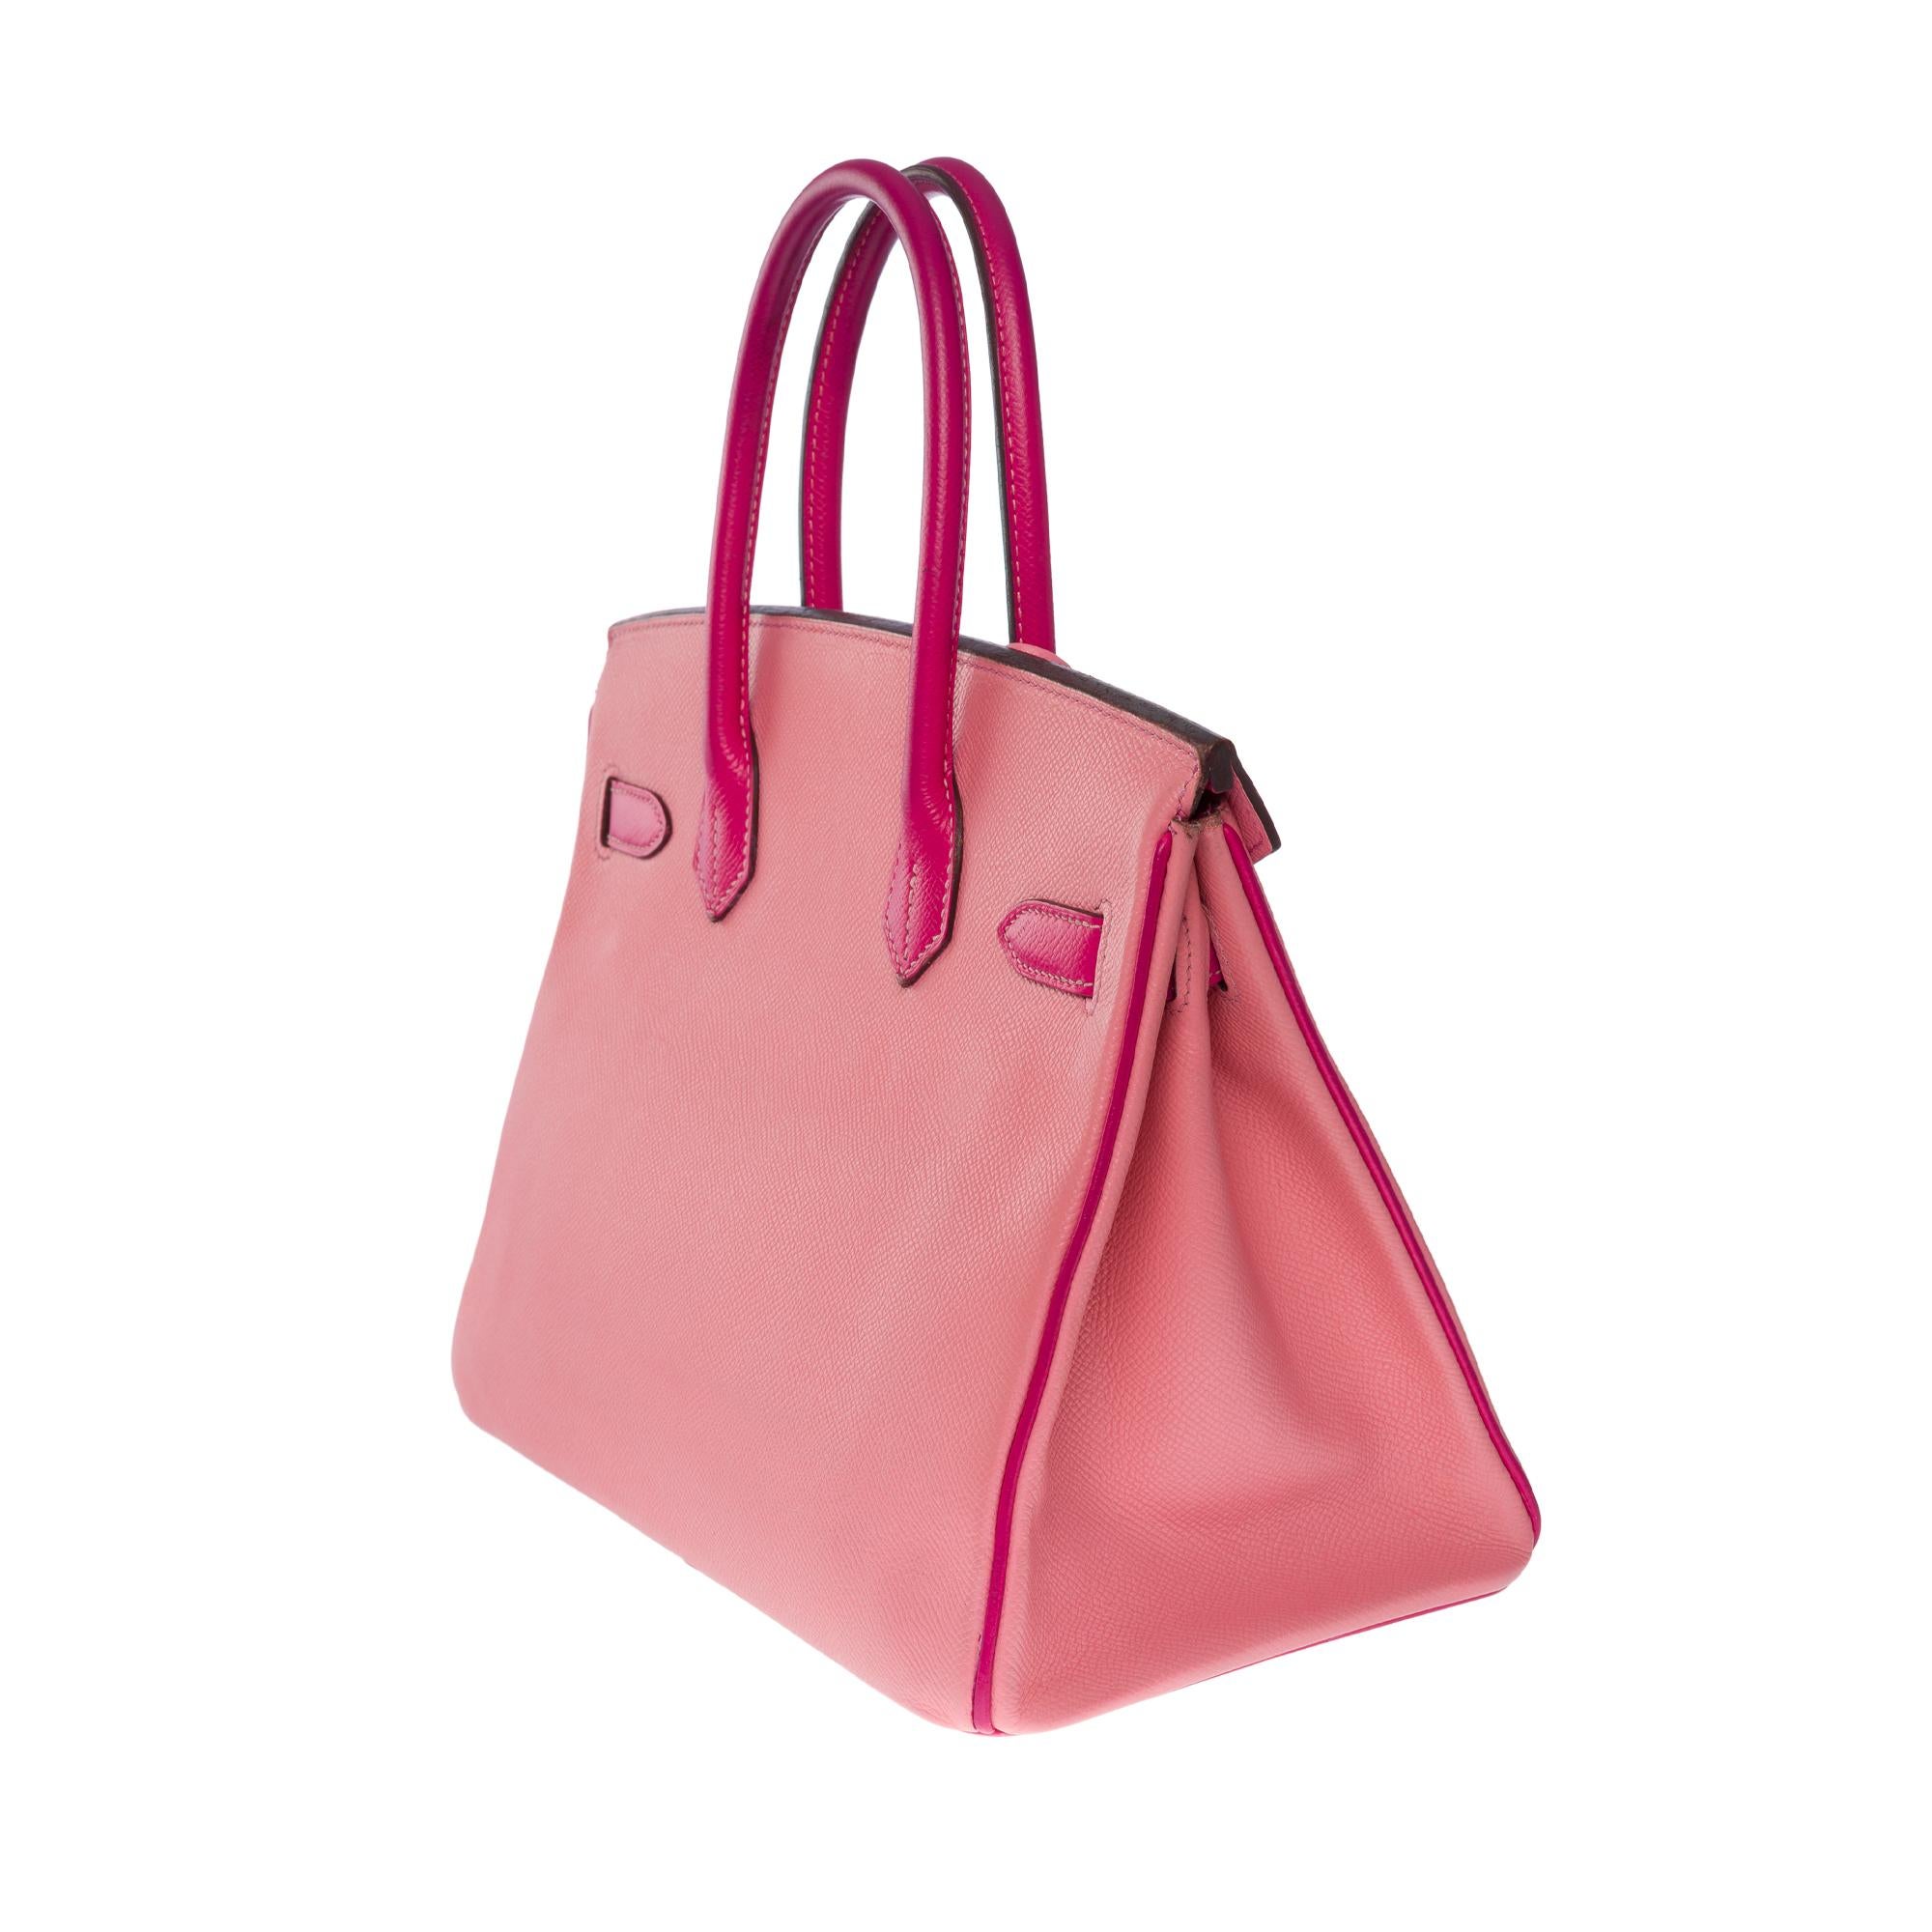  Rare Hermès Birkin 30 HSS Special Order handbag in Pink Epsom leather, BGHW For Sale 1